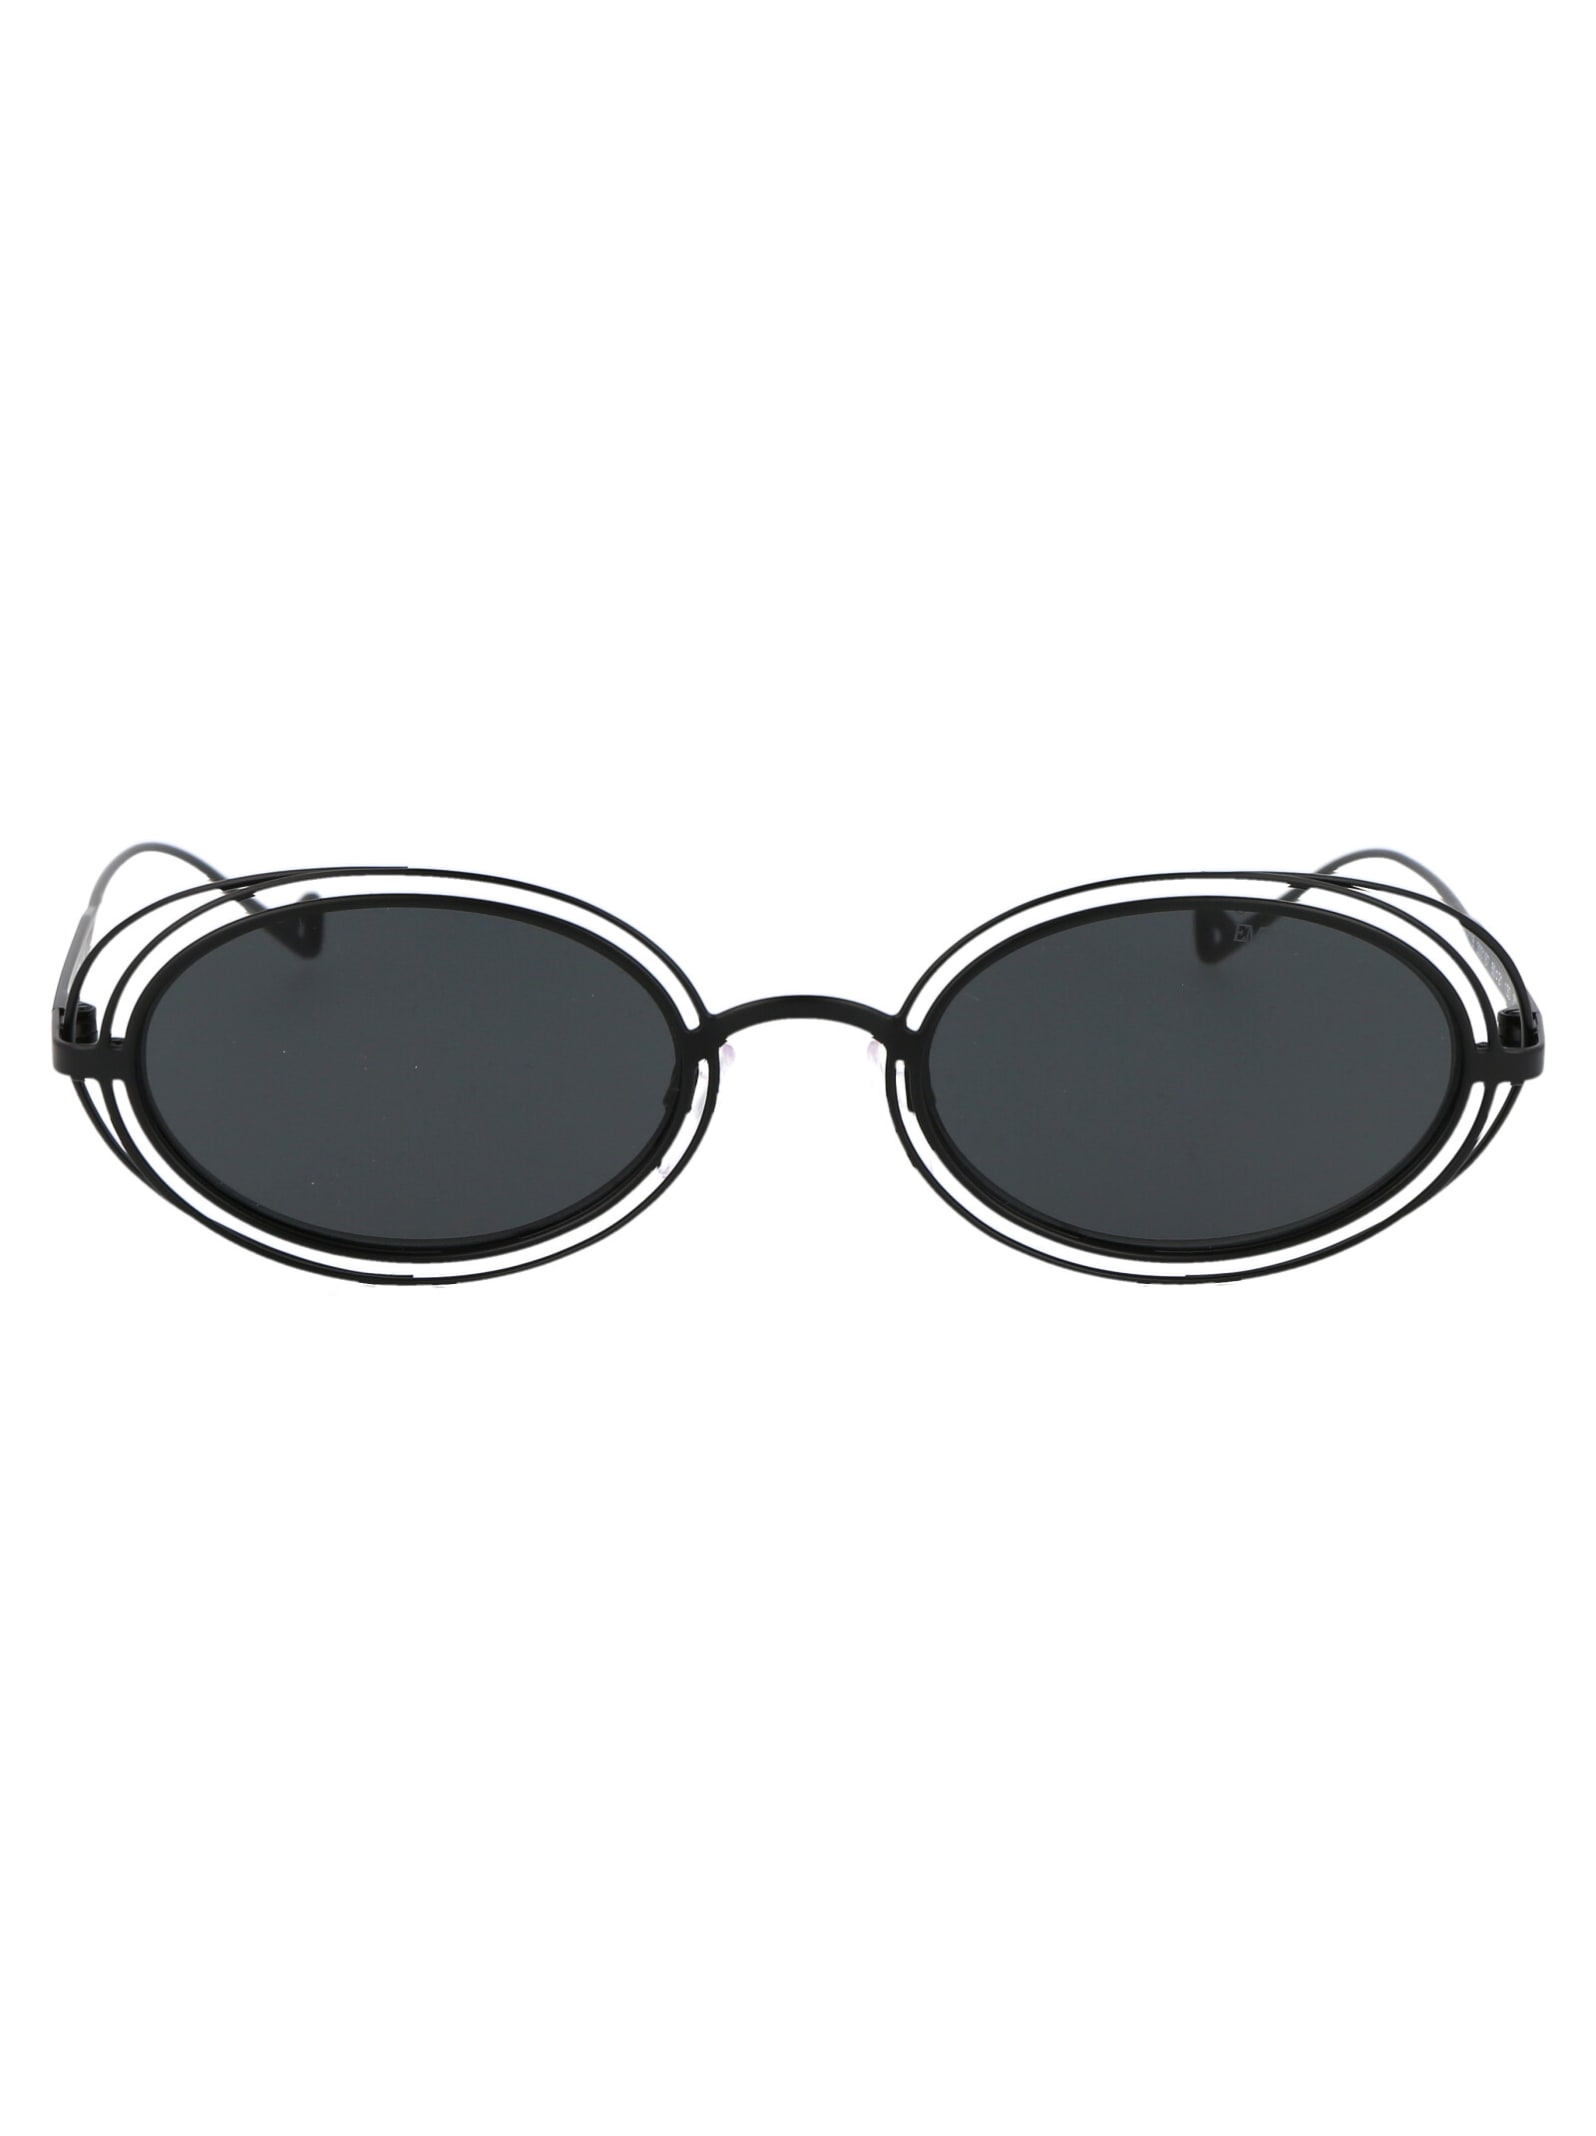 Emporio Armani 0ea2118 Sunglasses